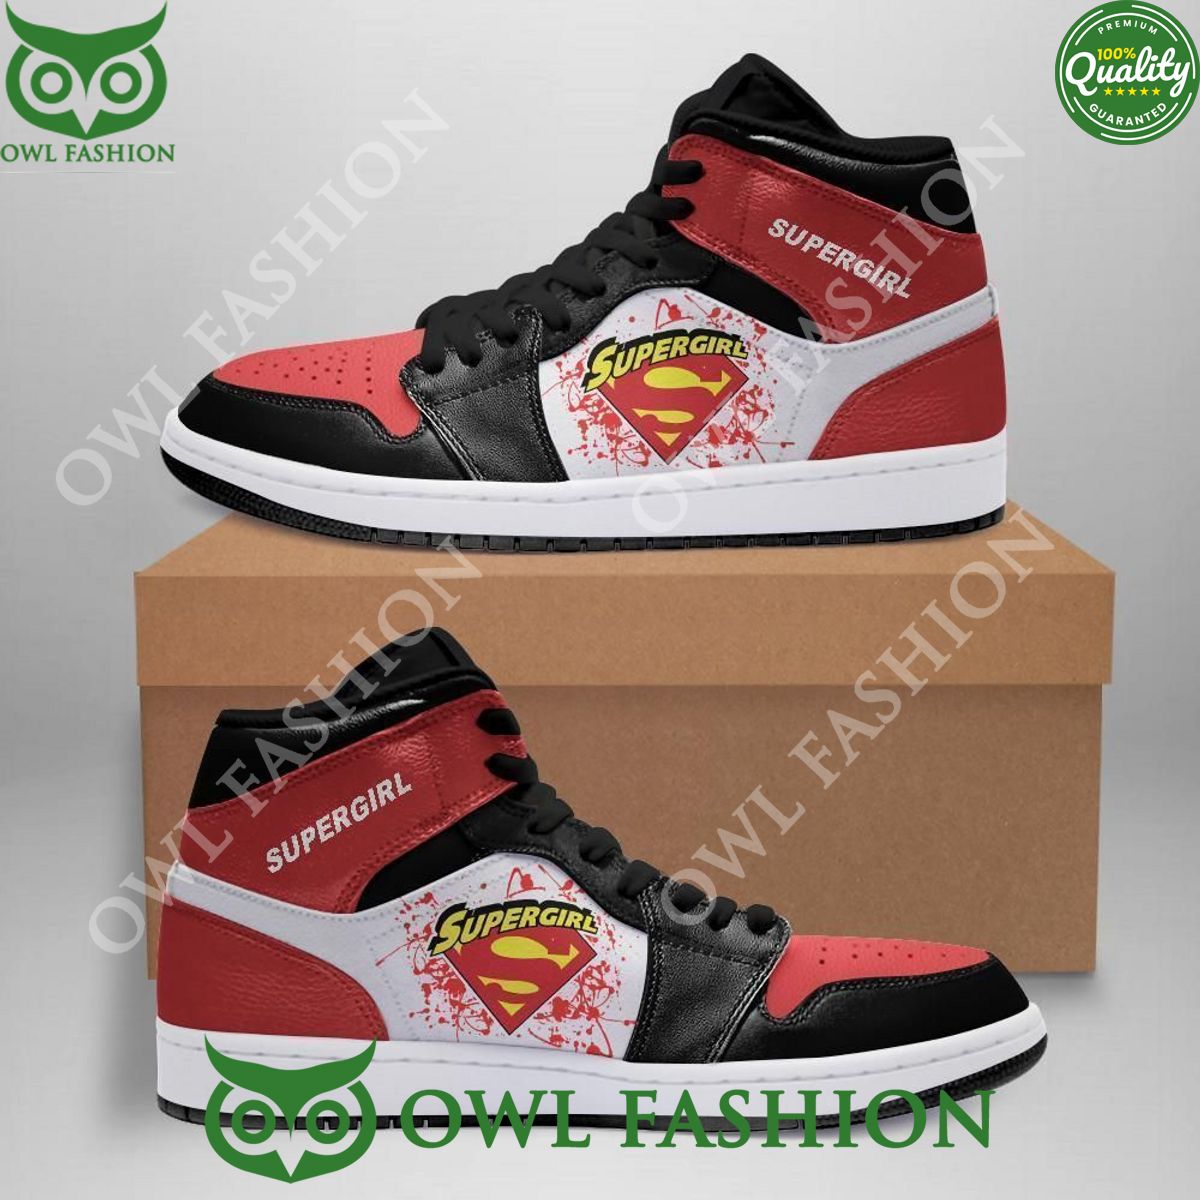 Supergirl DC Comics Air Jordan Sneakers Shoes Sport